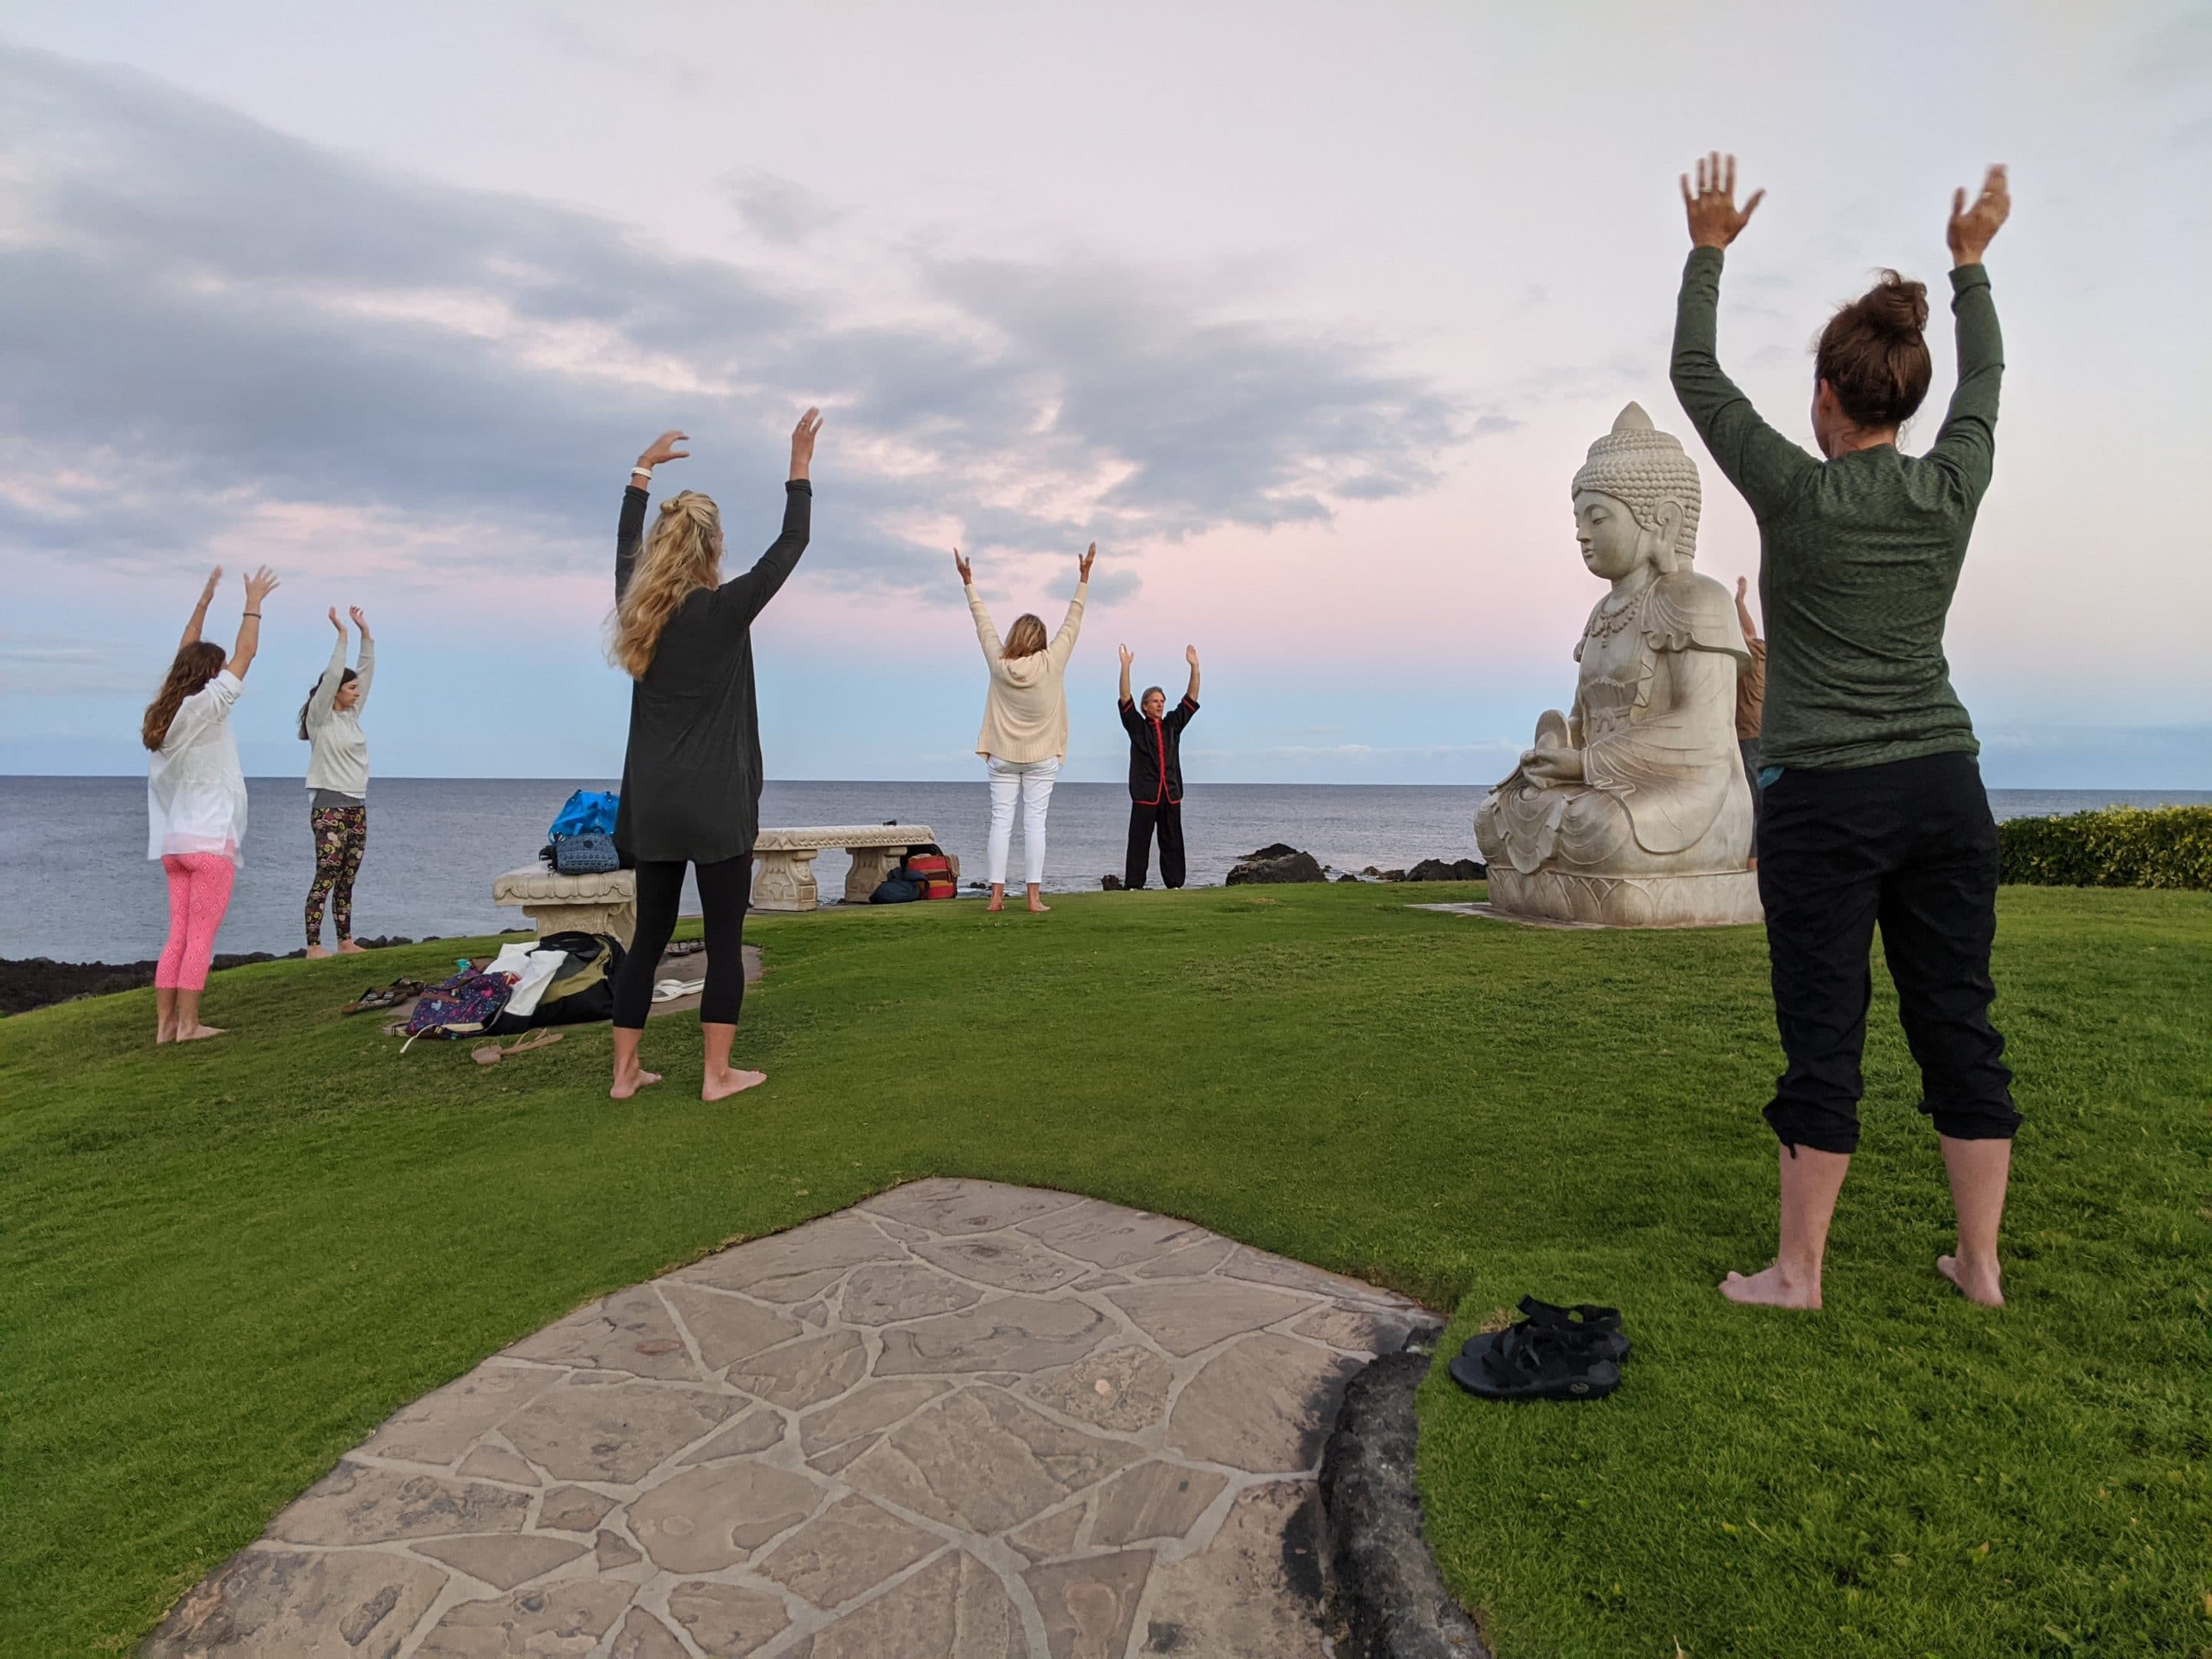 Photo taken in Hawaii overlooking ocean with Qigong Awareness students practicing Qigong